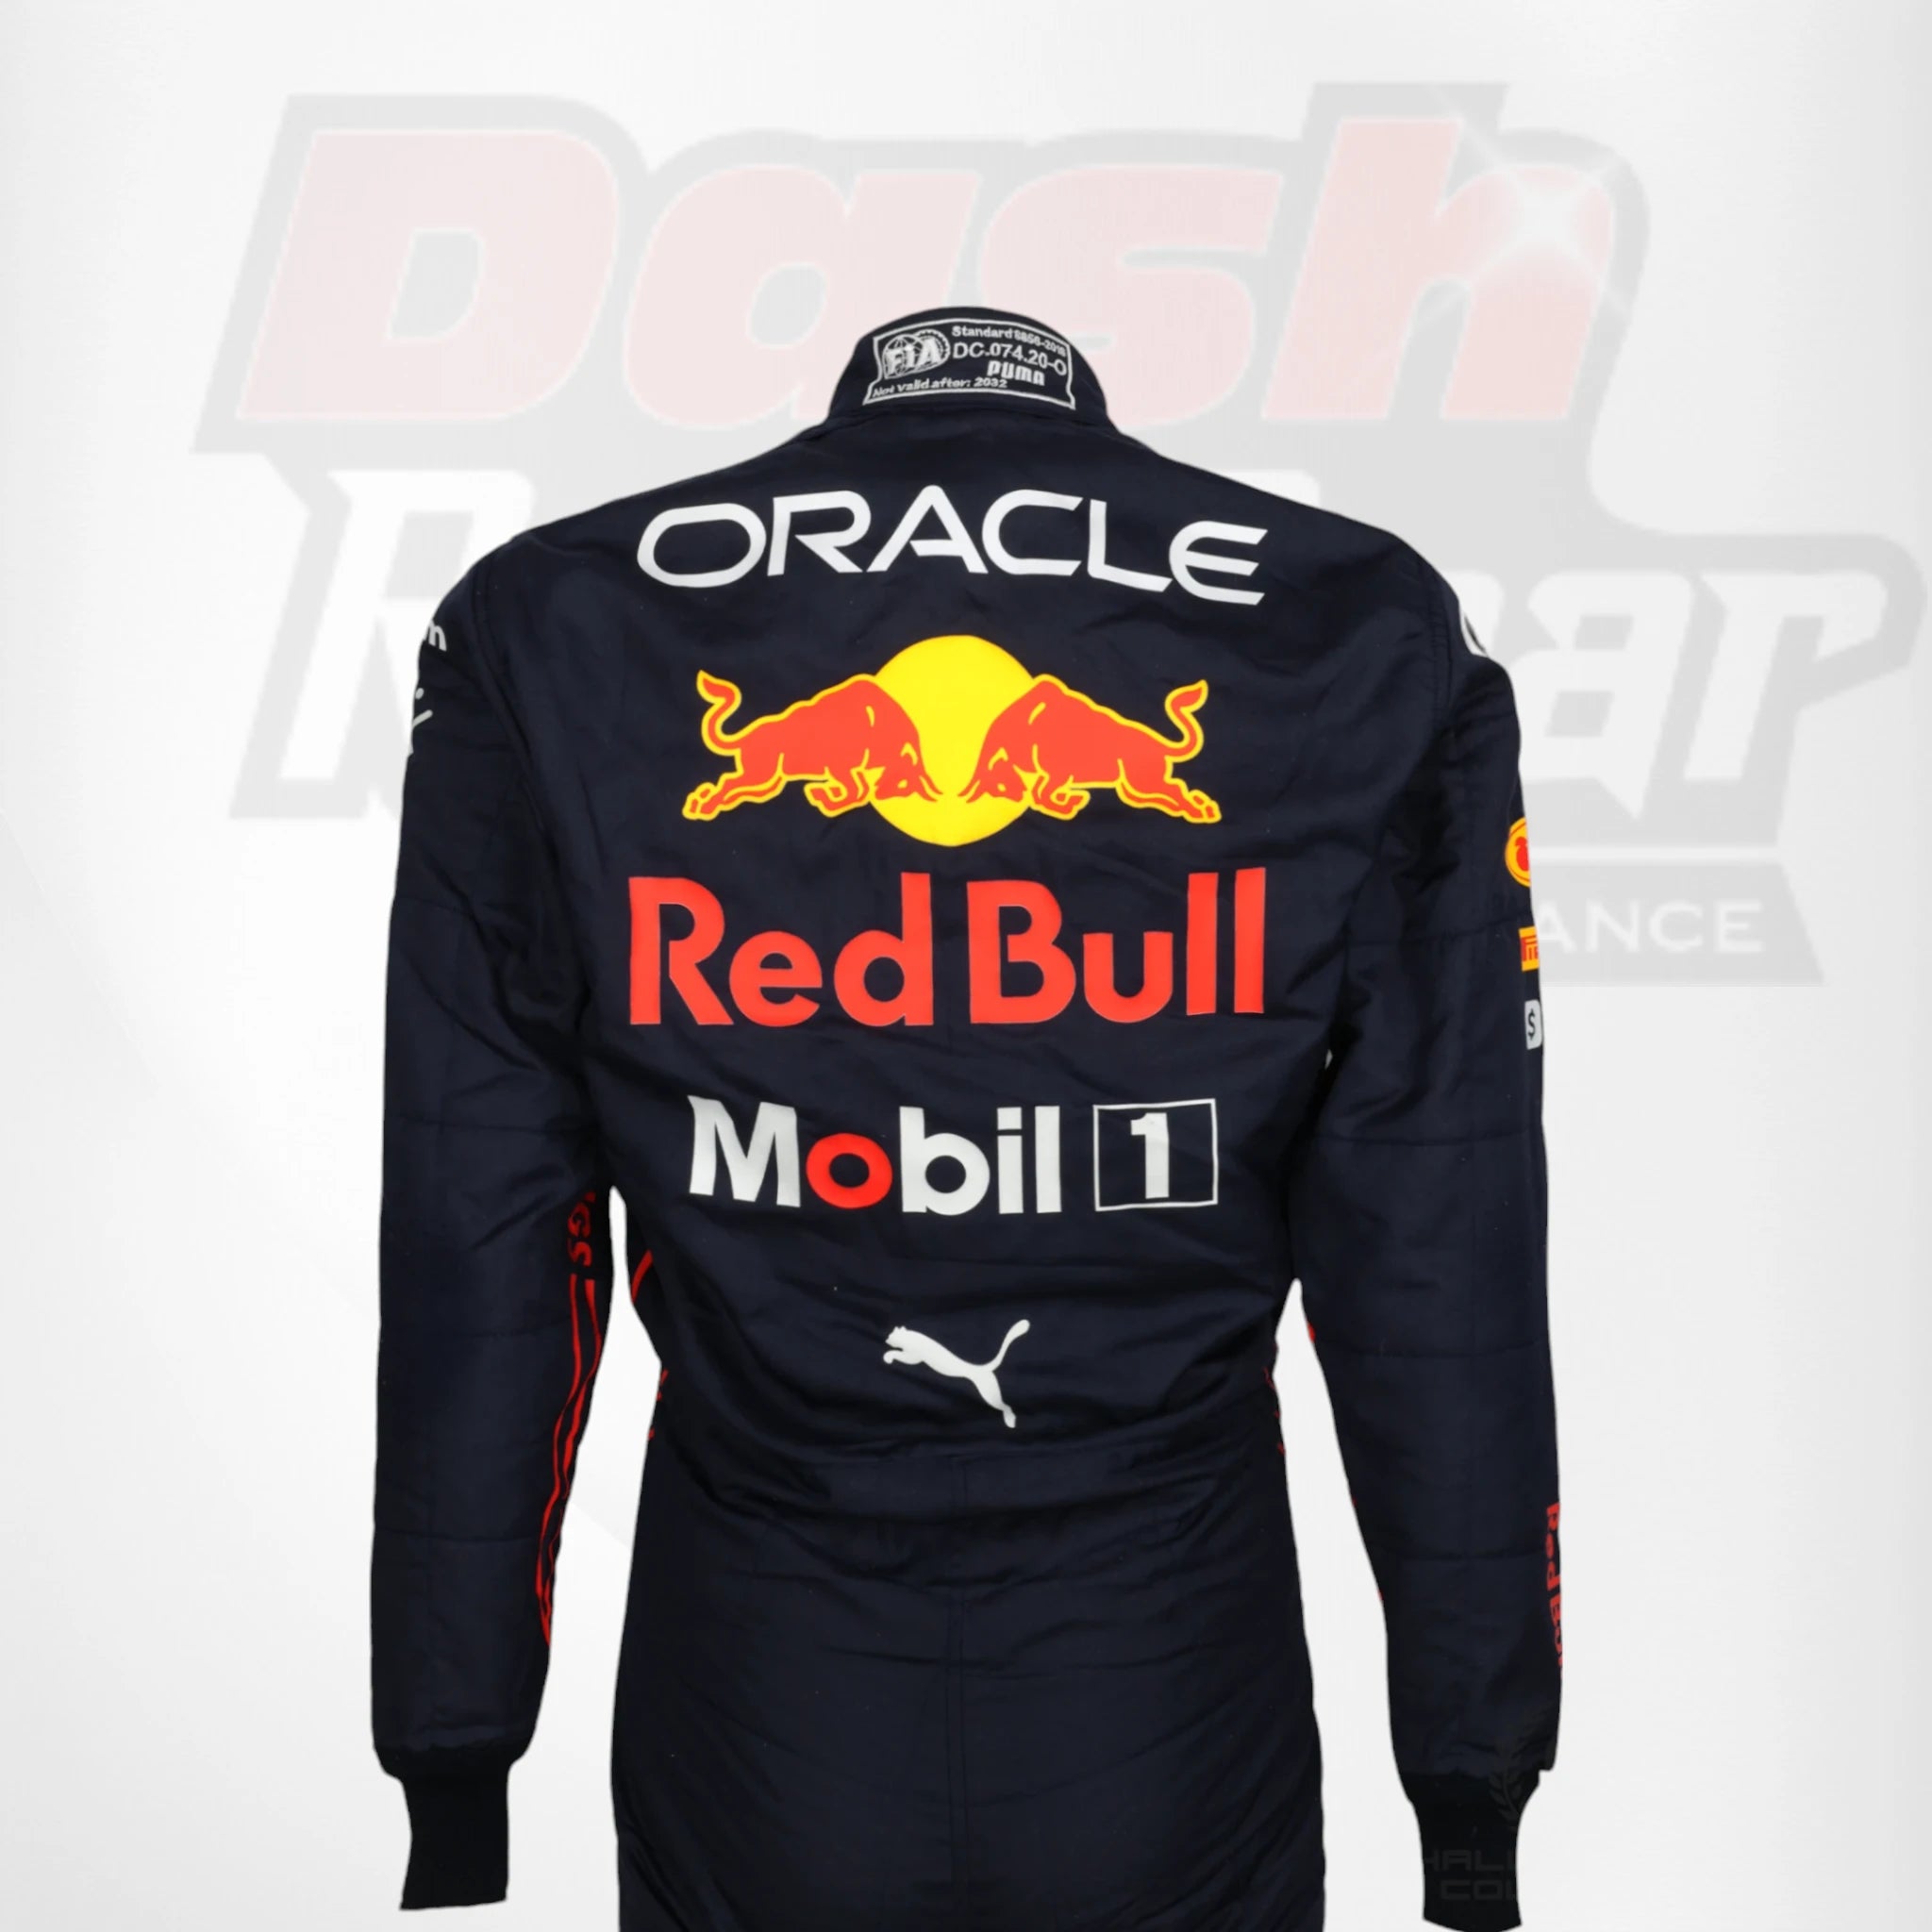 2022 Red Bull Max Verstappen F1 Race Suit